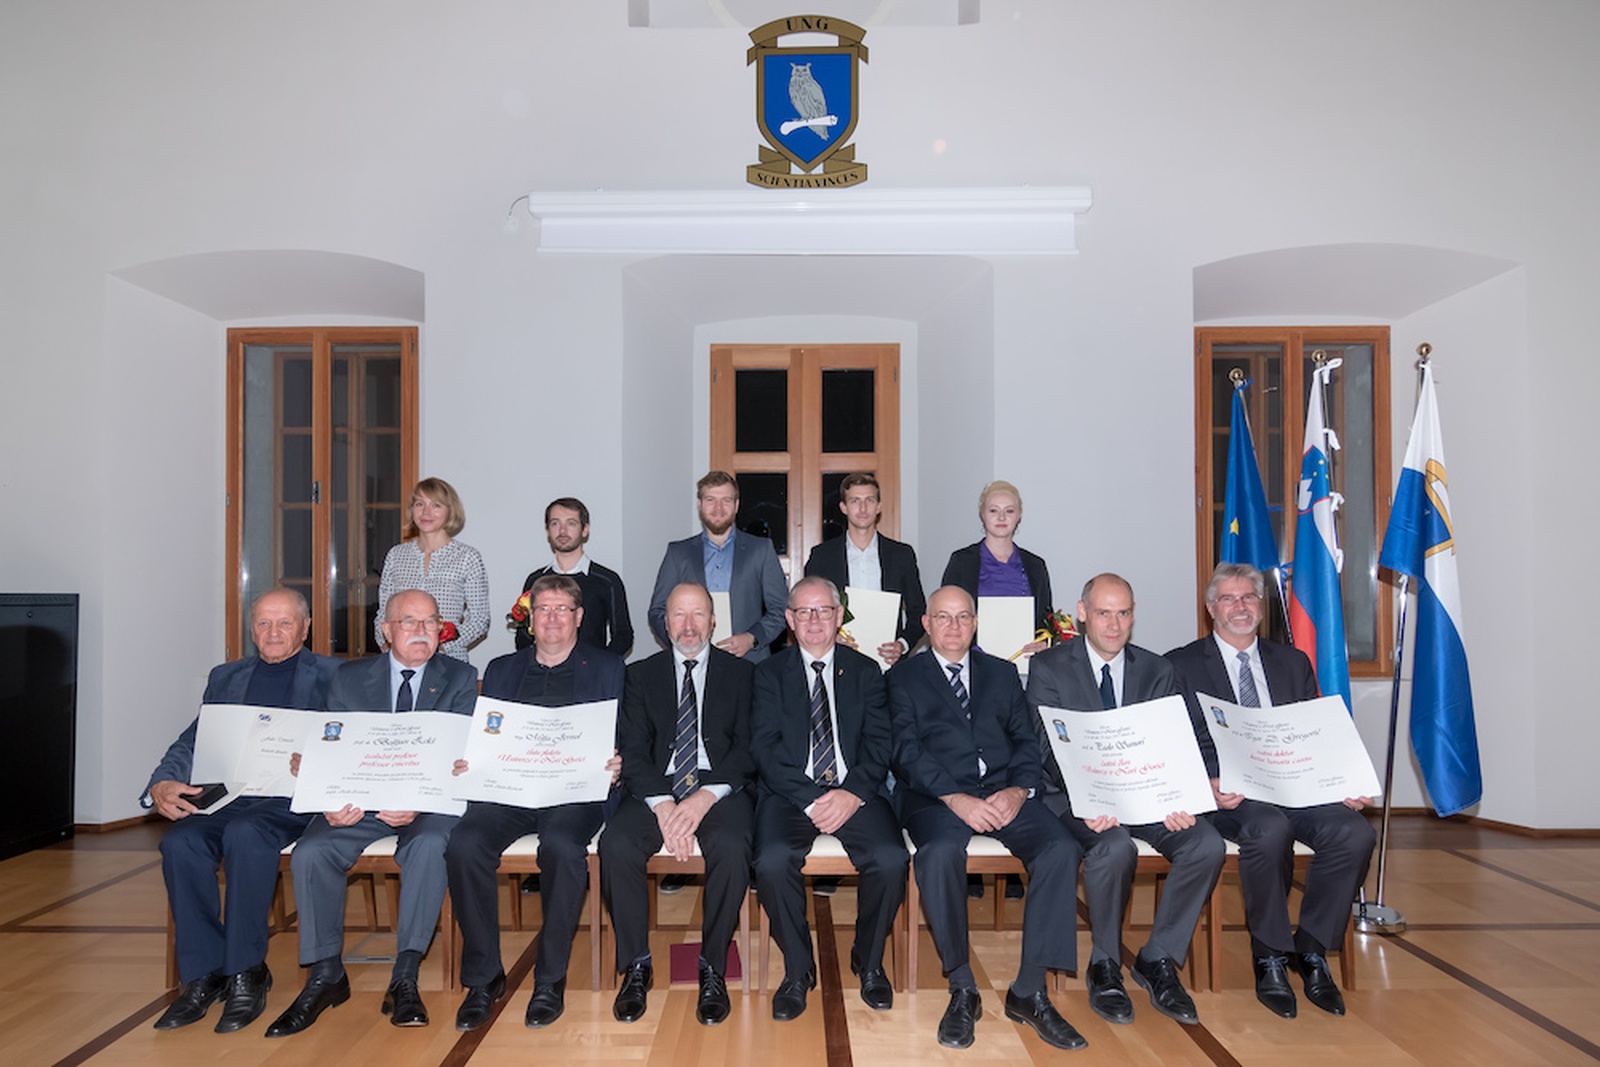 Letošnji nagrajenci in vodstvo Univerze v Novi Gorici. Foto: Miha Godec